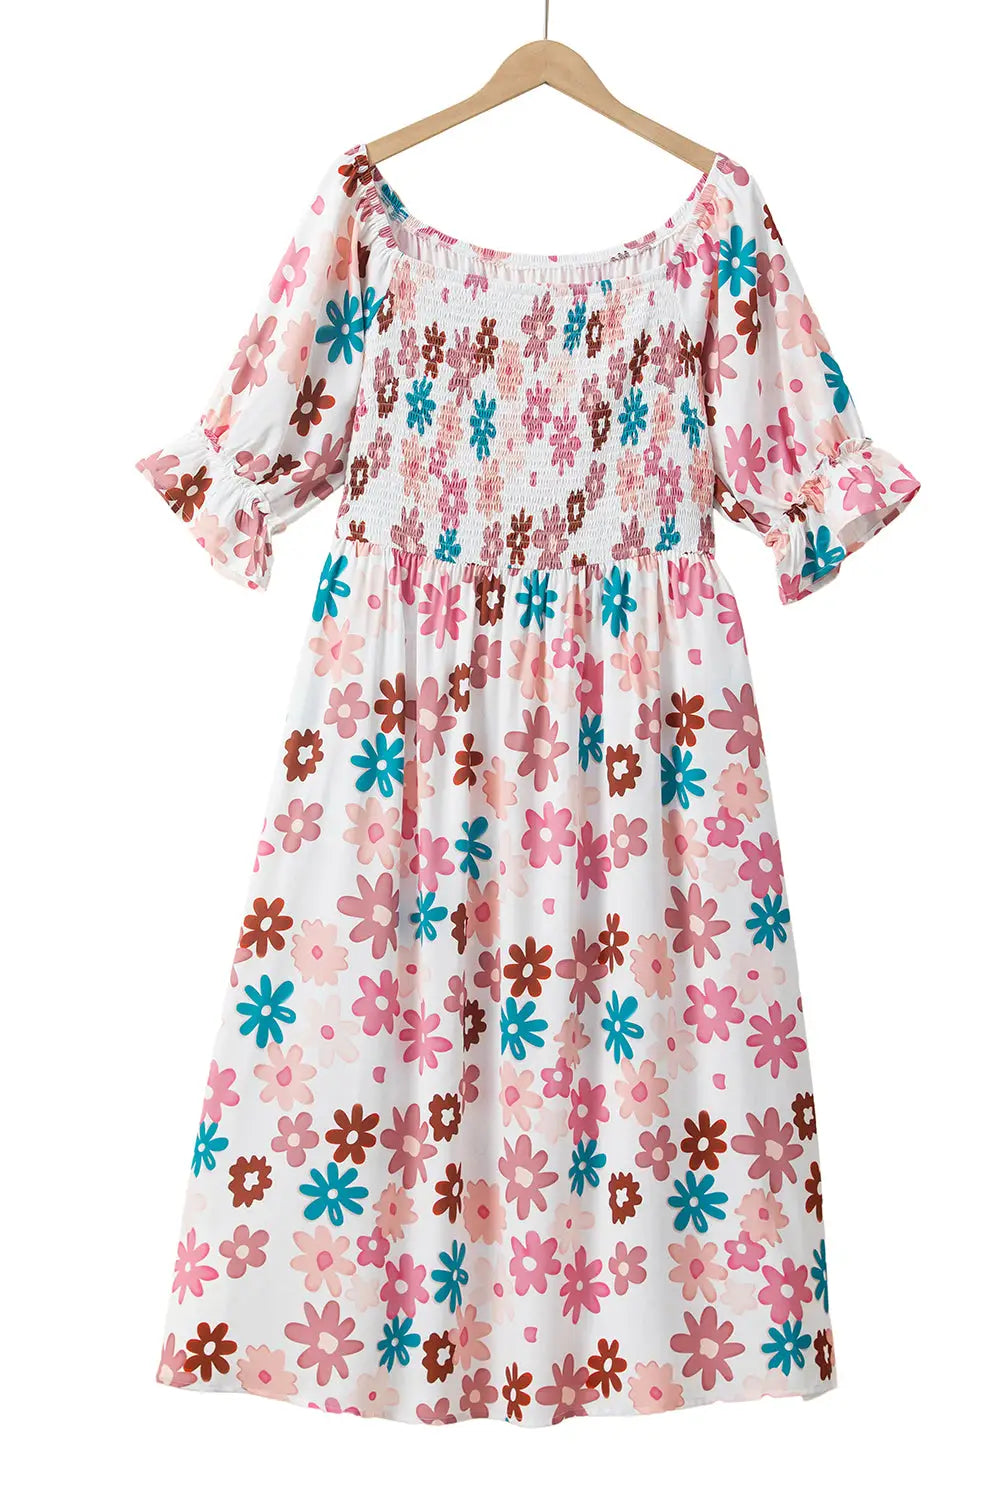 Flower smocked off shoulder midi dress - plus size/plus size dresses/plus dresses